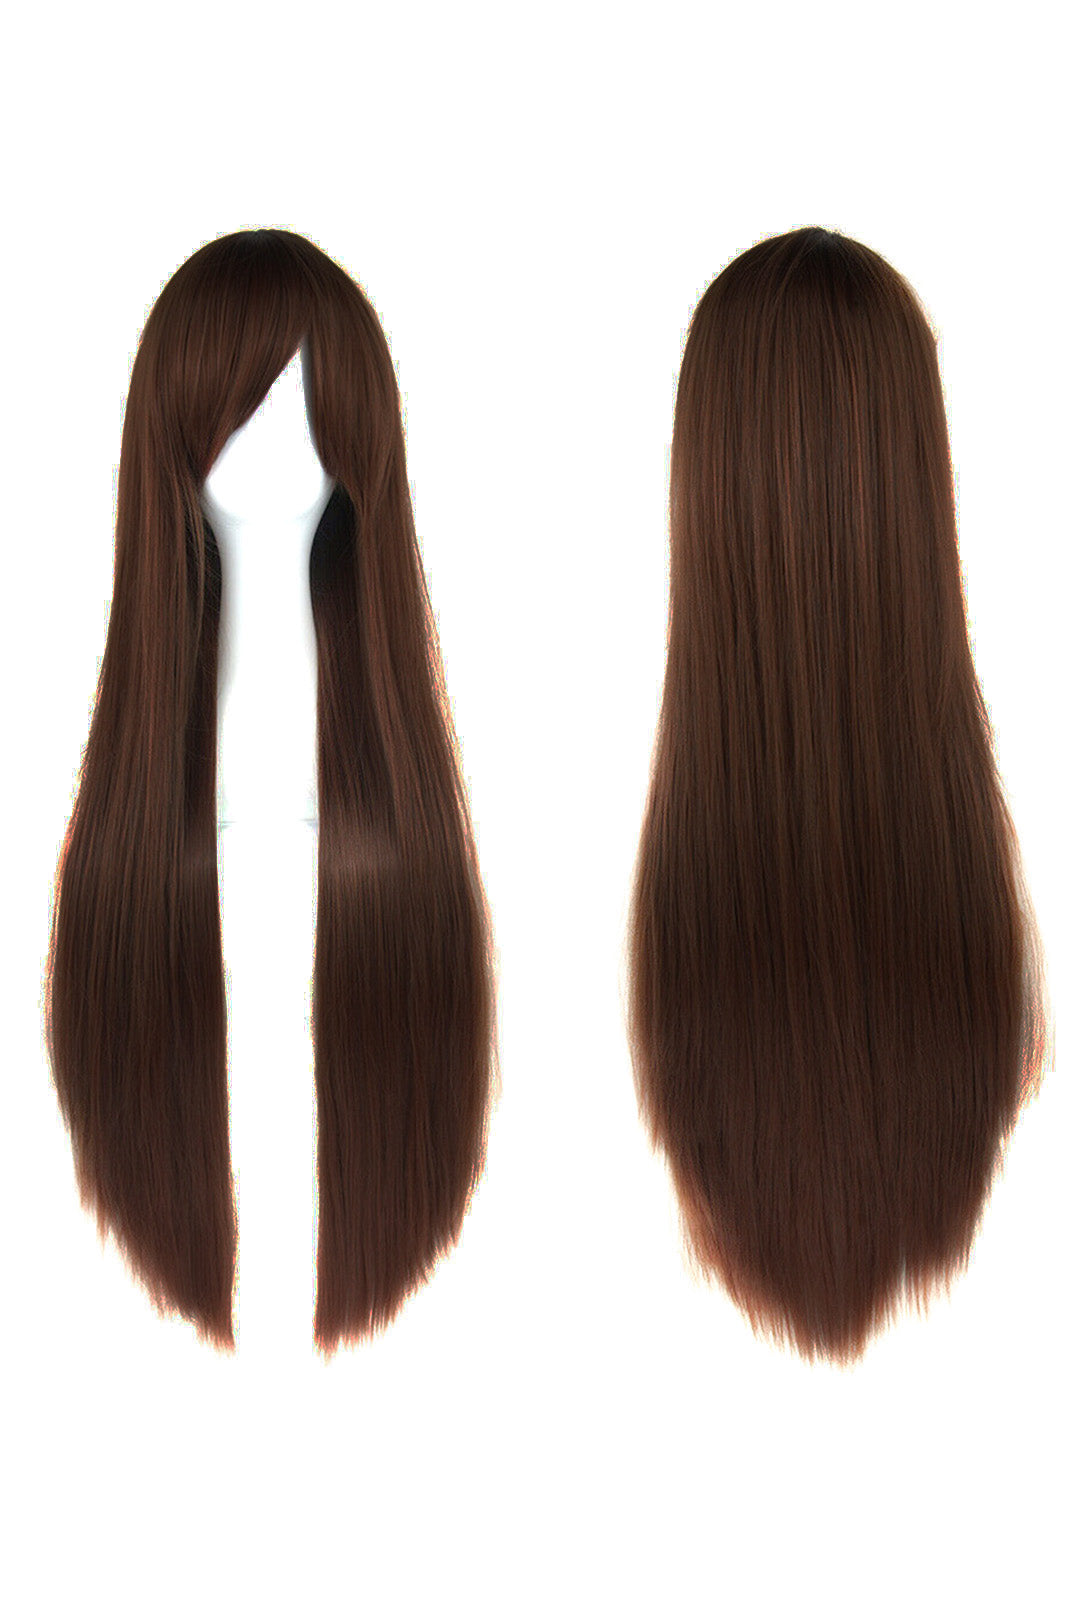 Dark Brown Long Straight Cosplay Wig